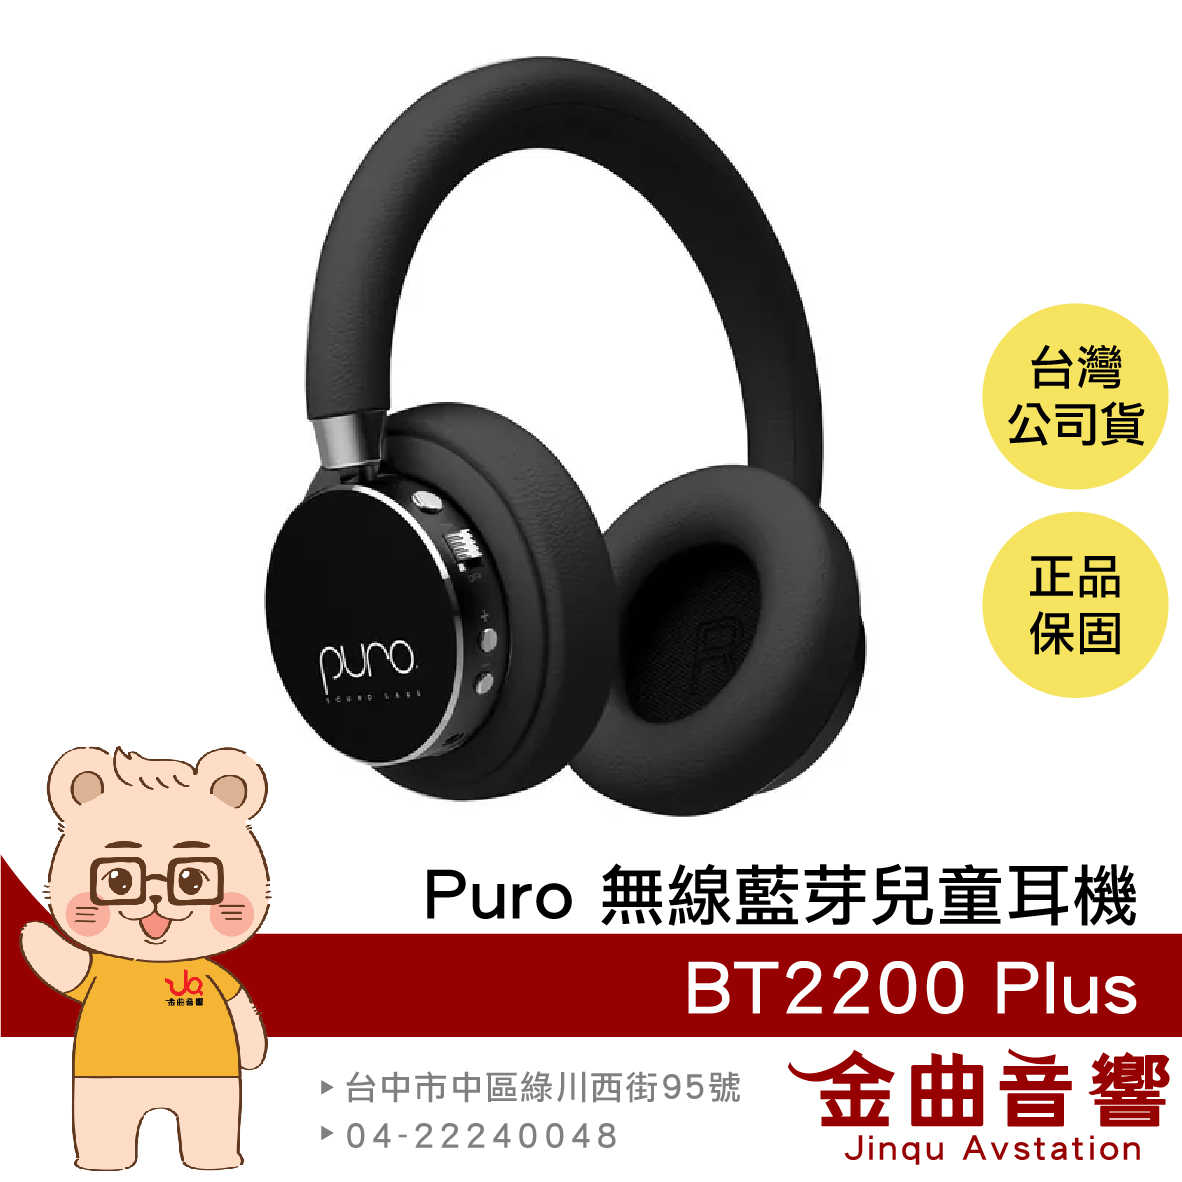 Puro BT2200 Plus 黑色 安全音量 音樂分享 可替換耳罩 耳罩式 無線 藍牙 兒童耳機 | 金曲音響